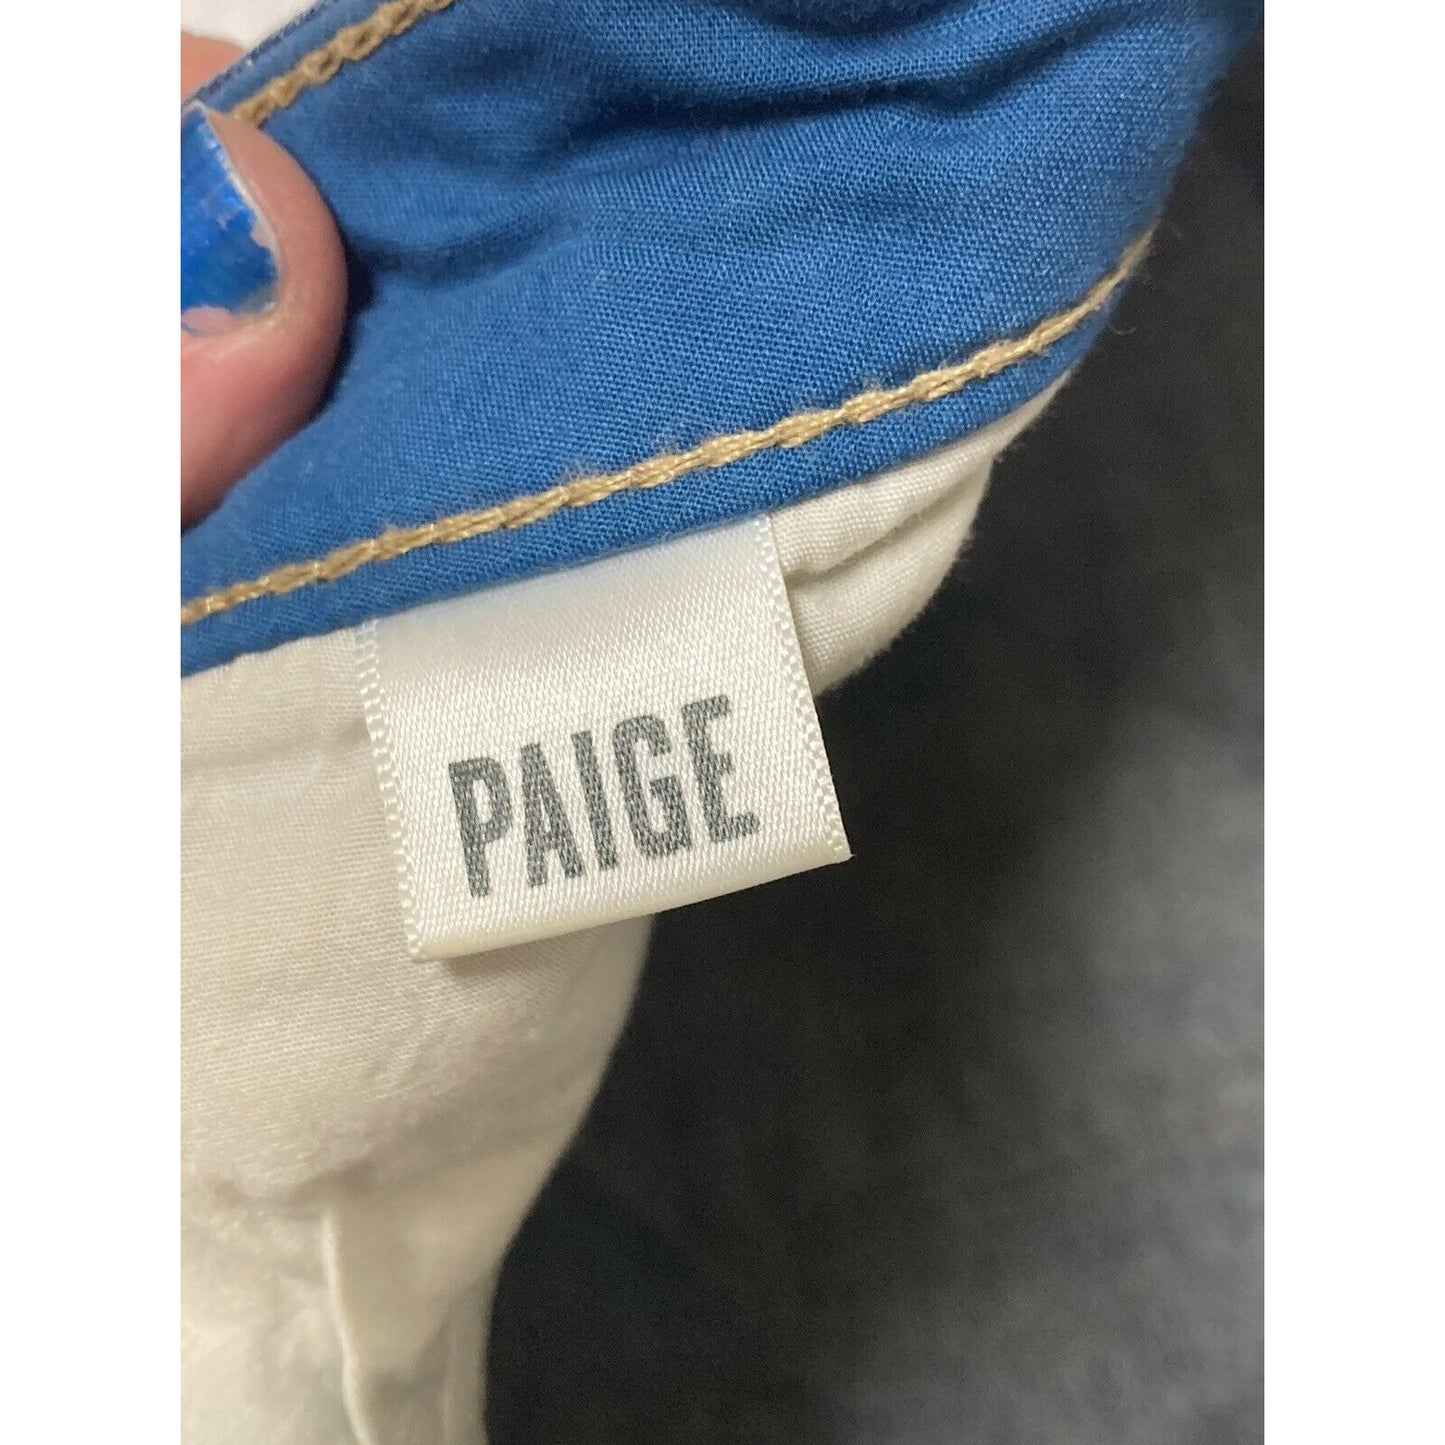 Paige Jimmy Jimmy Jean Shorts Women's Size 28 Distressed Denim Cuffed Raw Hem